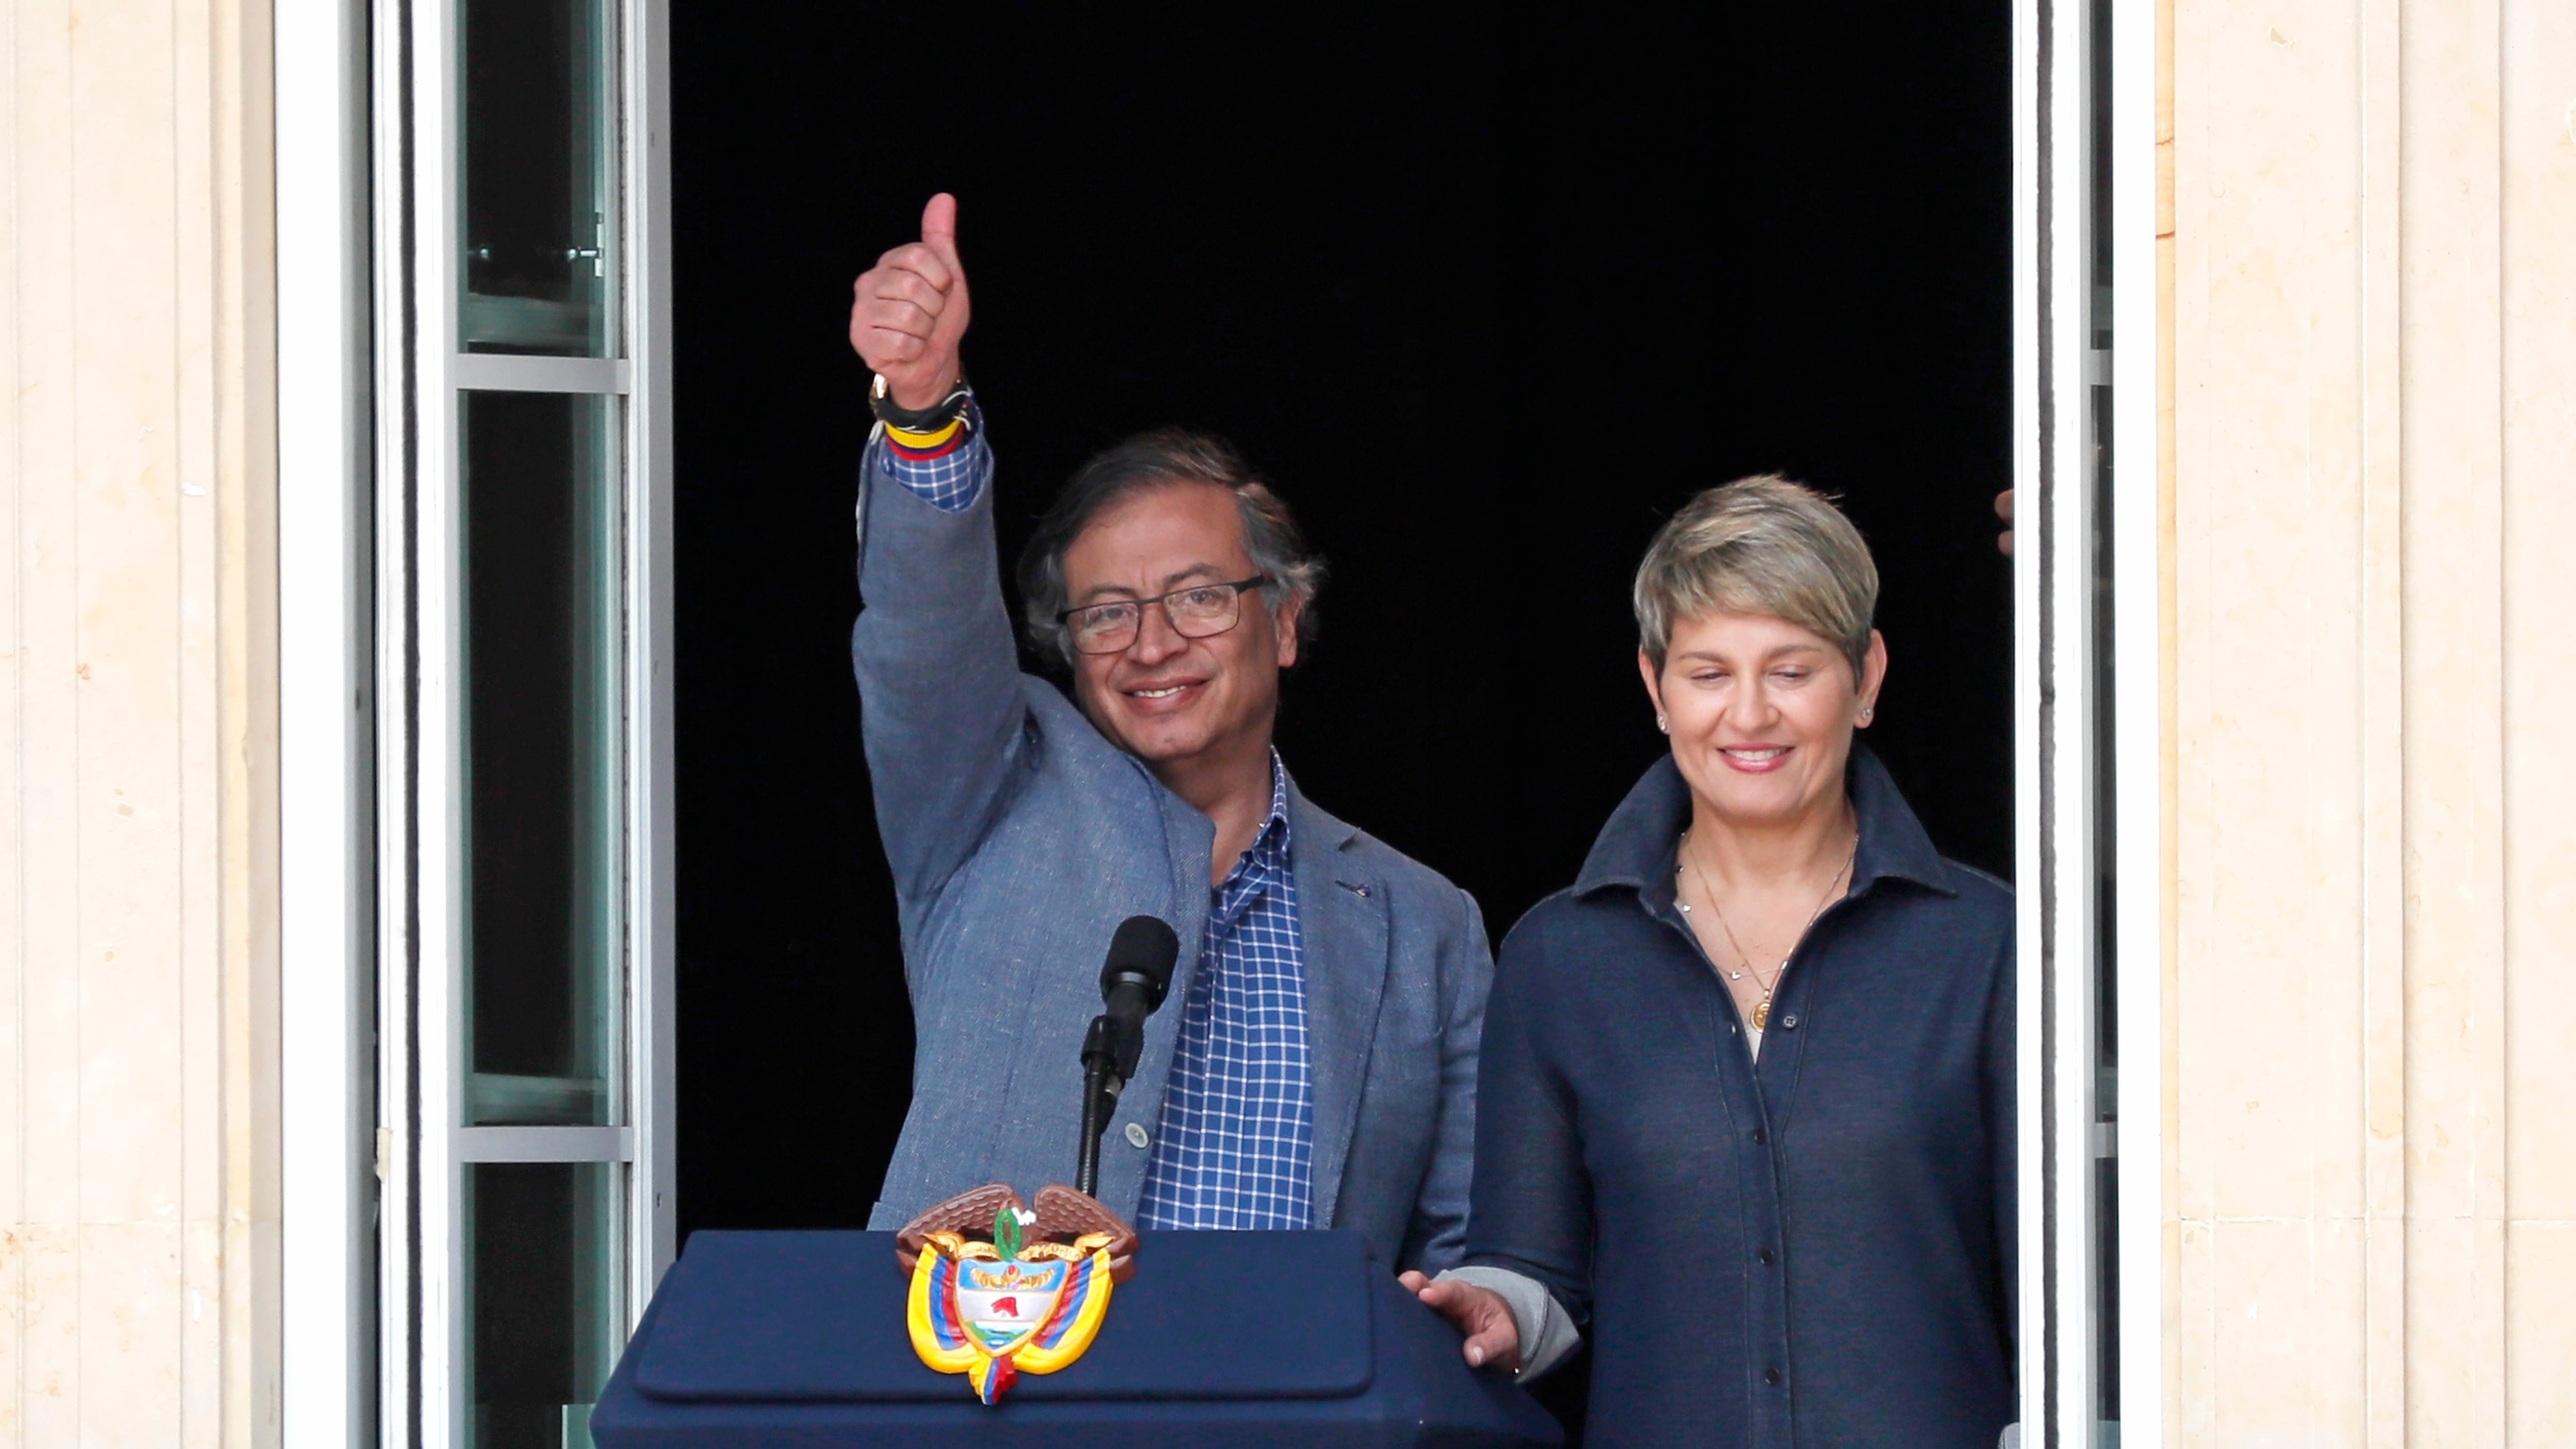 El presidente y la primera dama en el balcón durante el discurso del 1 de mayo.